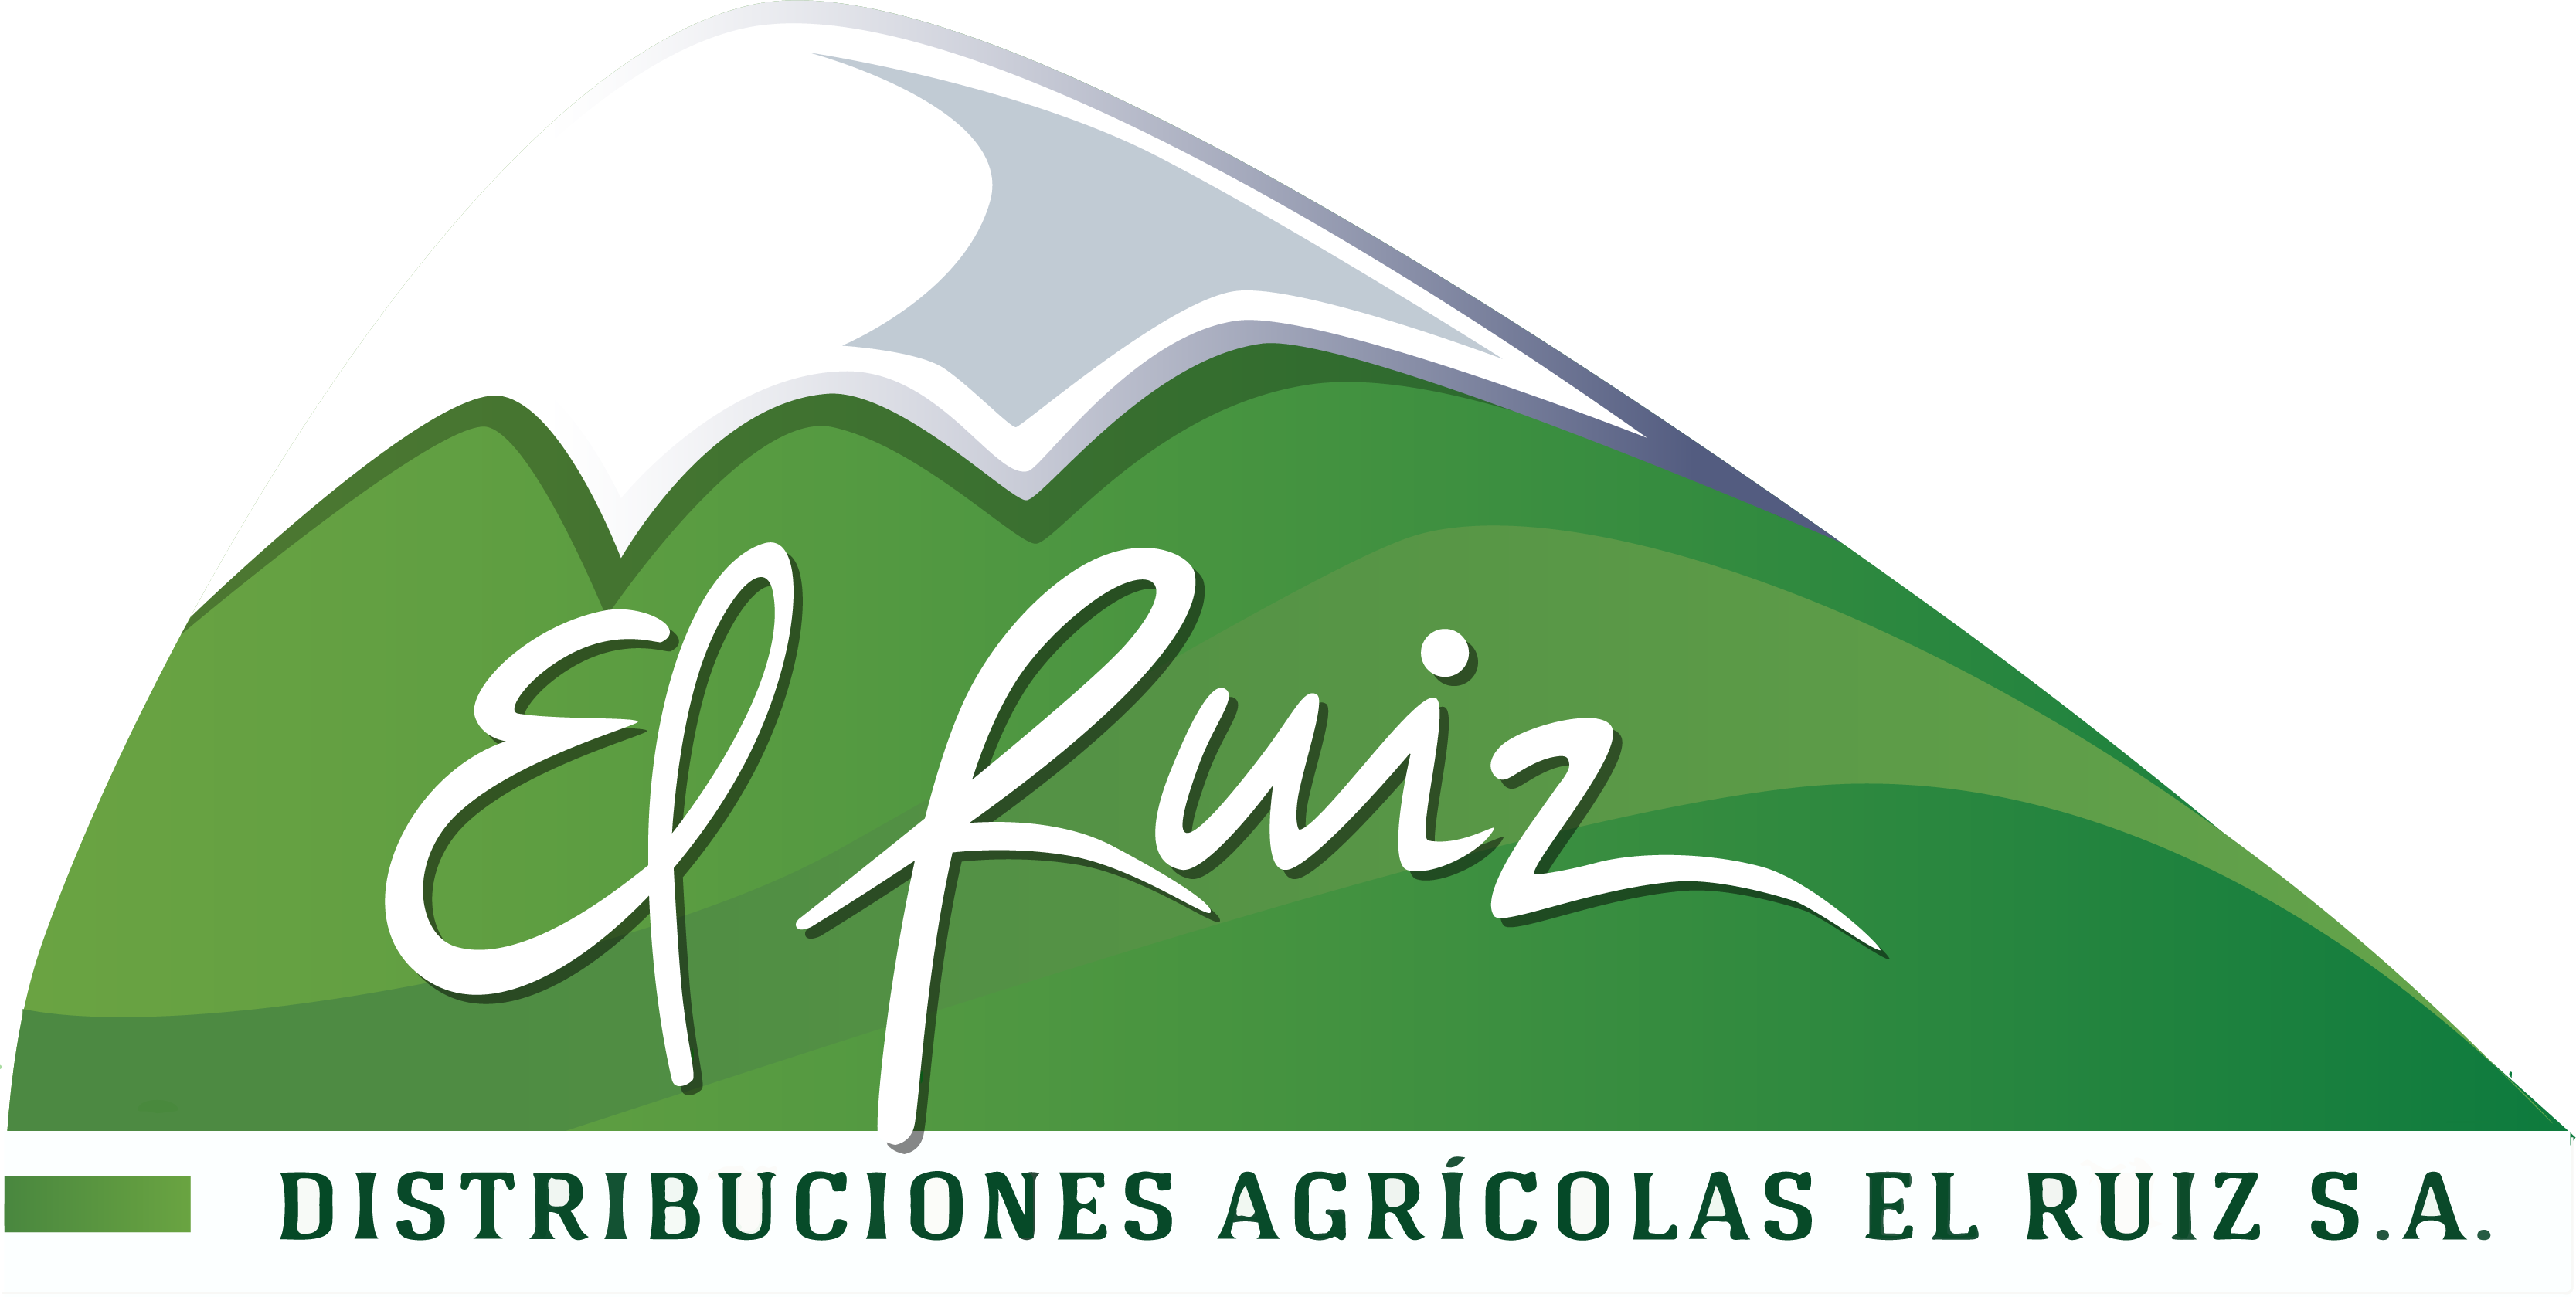 ALMACEN Y DISTRIBUCIONES AGRICOLAS EL RUIZ S.A